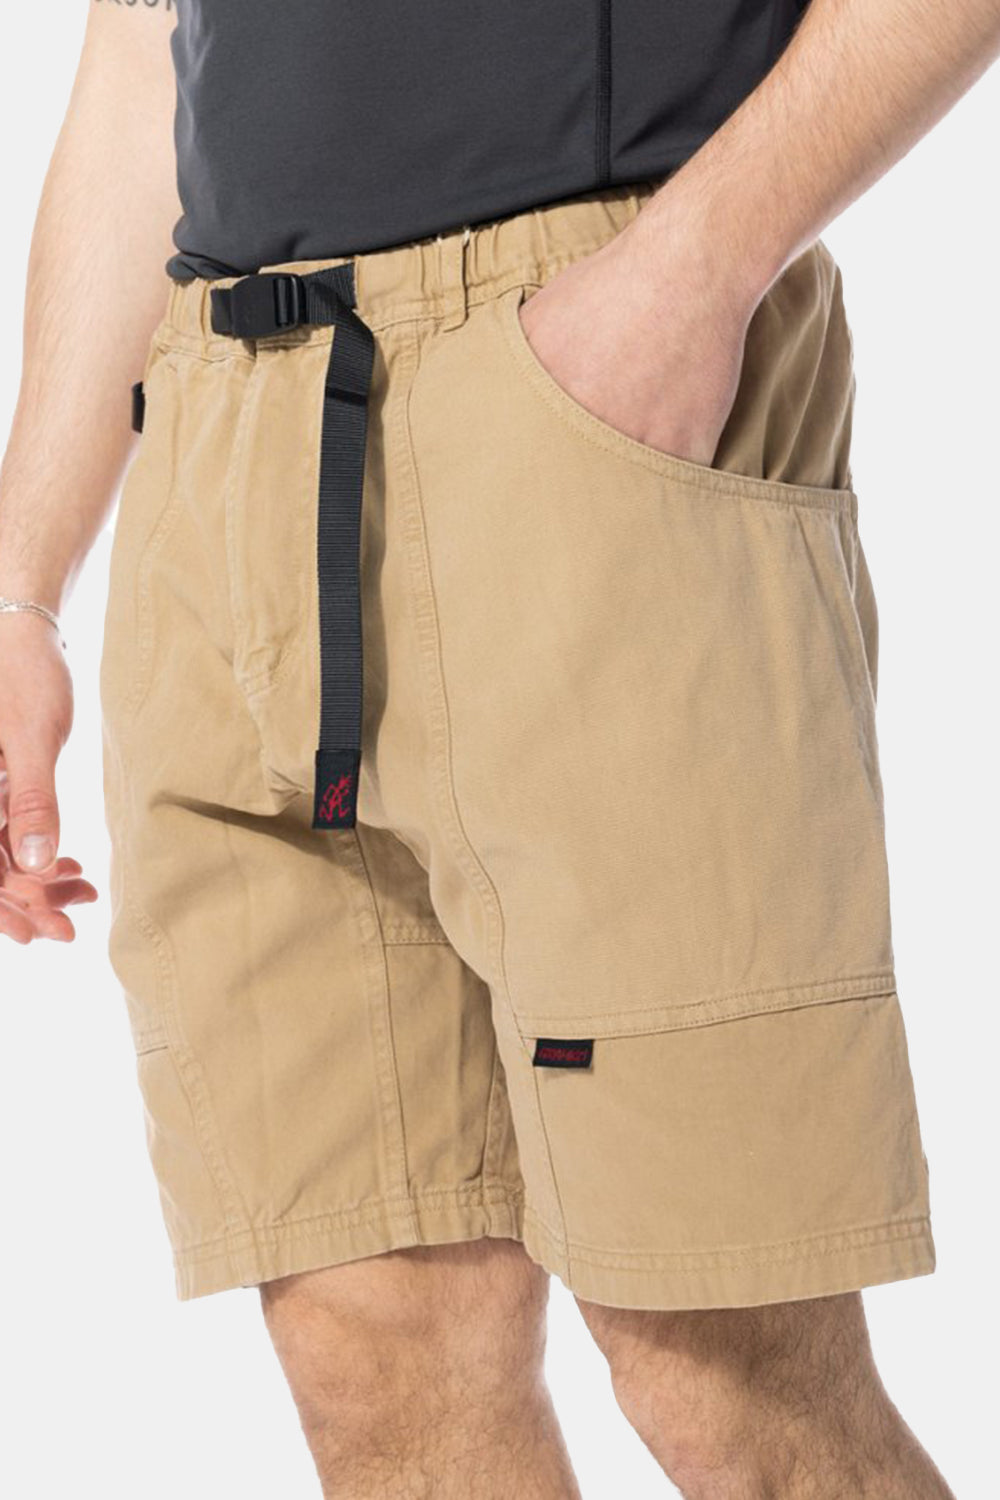 Gramicci Gadget Shorts (Chino)